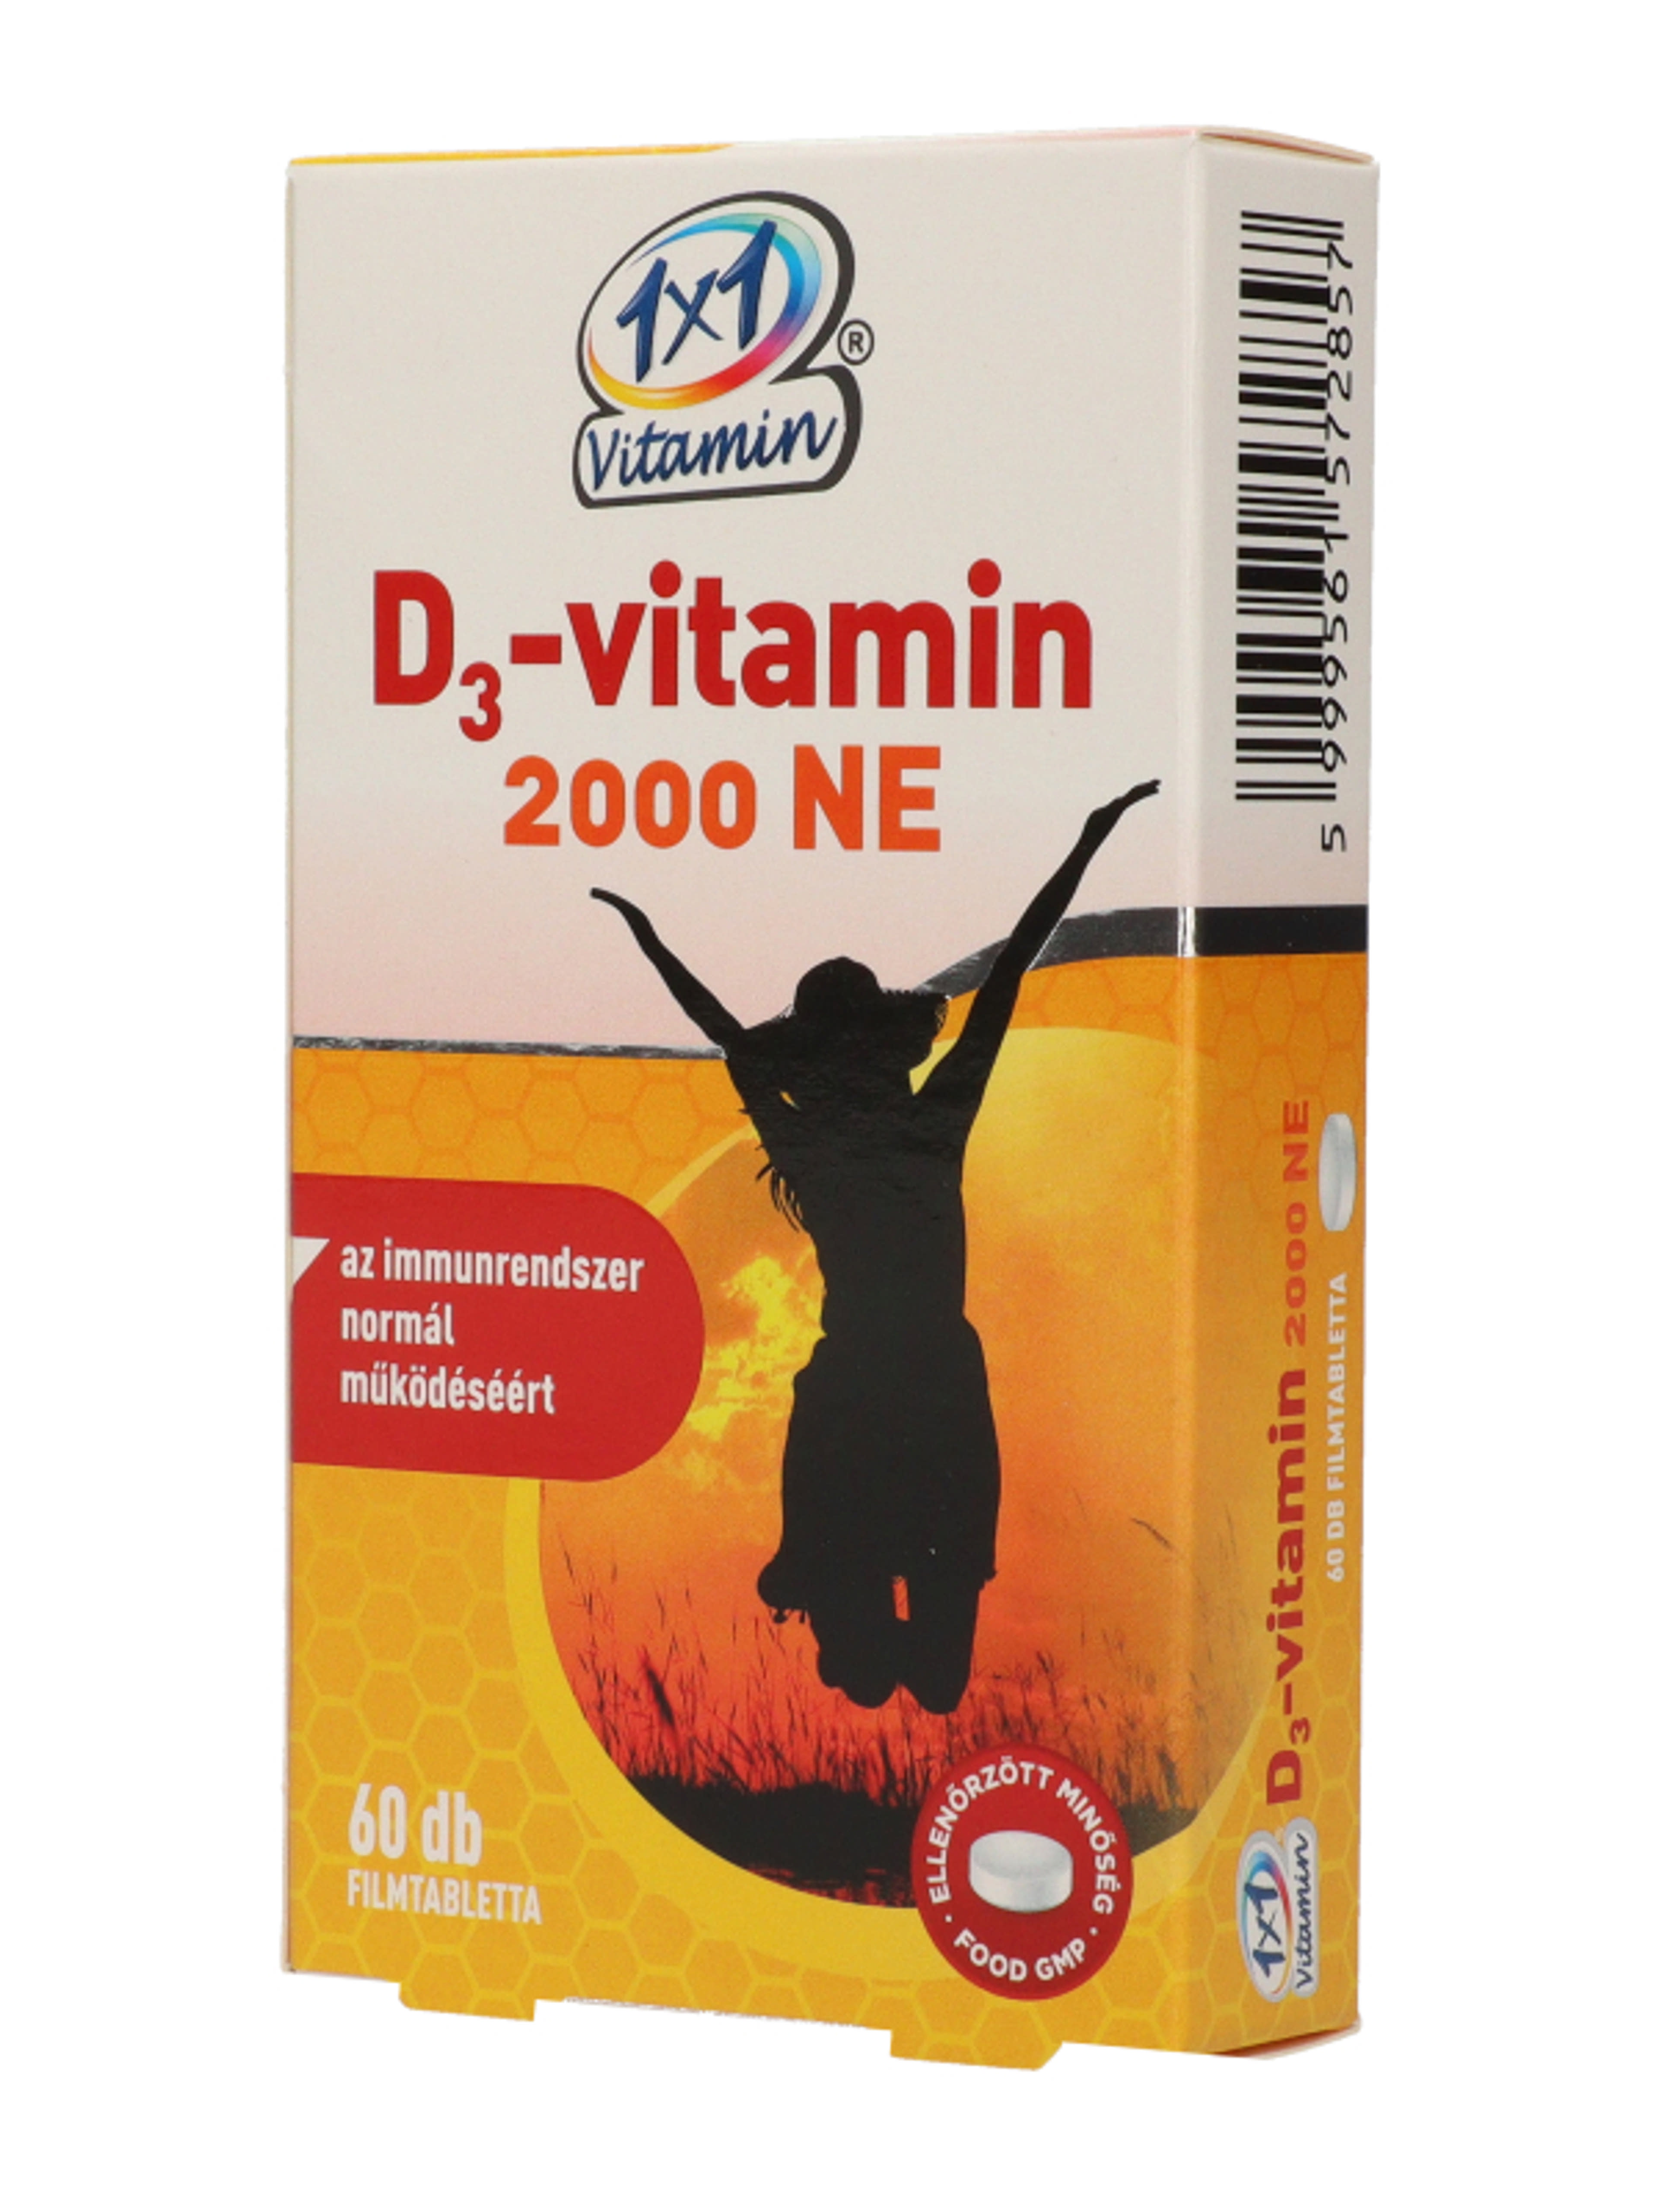 1x1 vitamin D3 2000Ne - 60 db-3